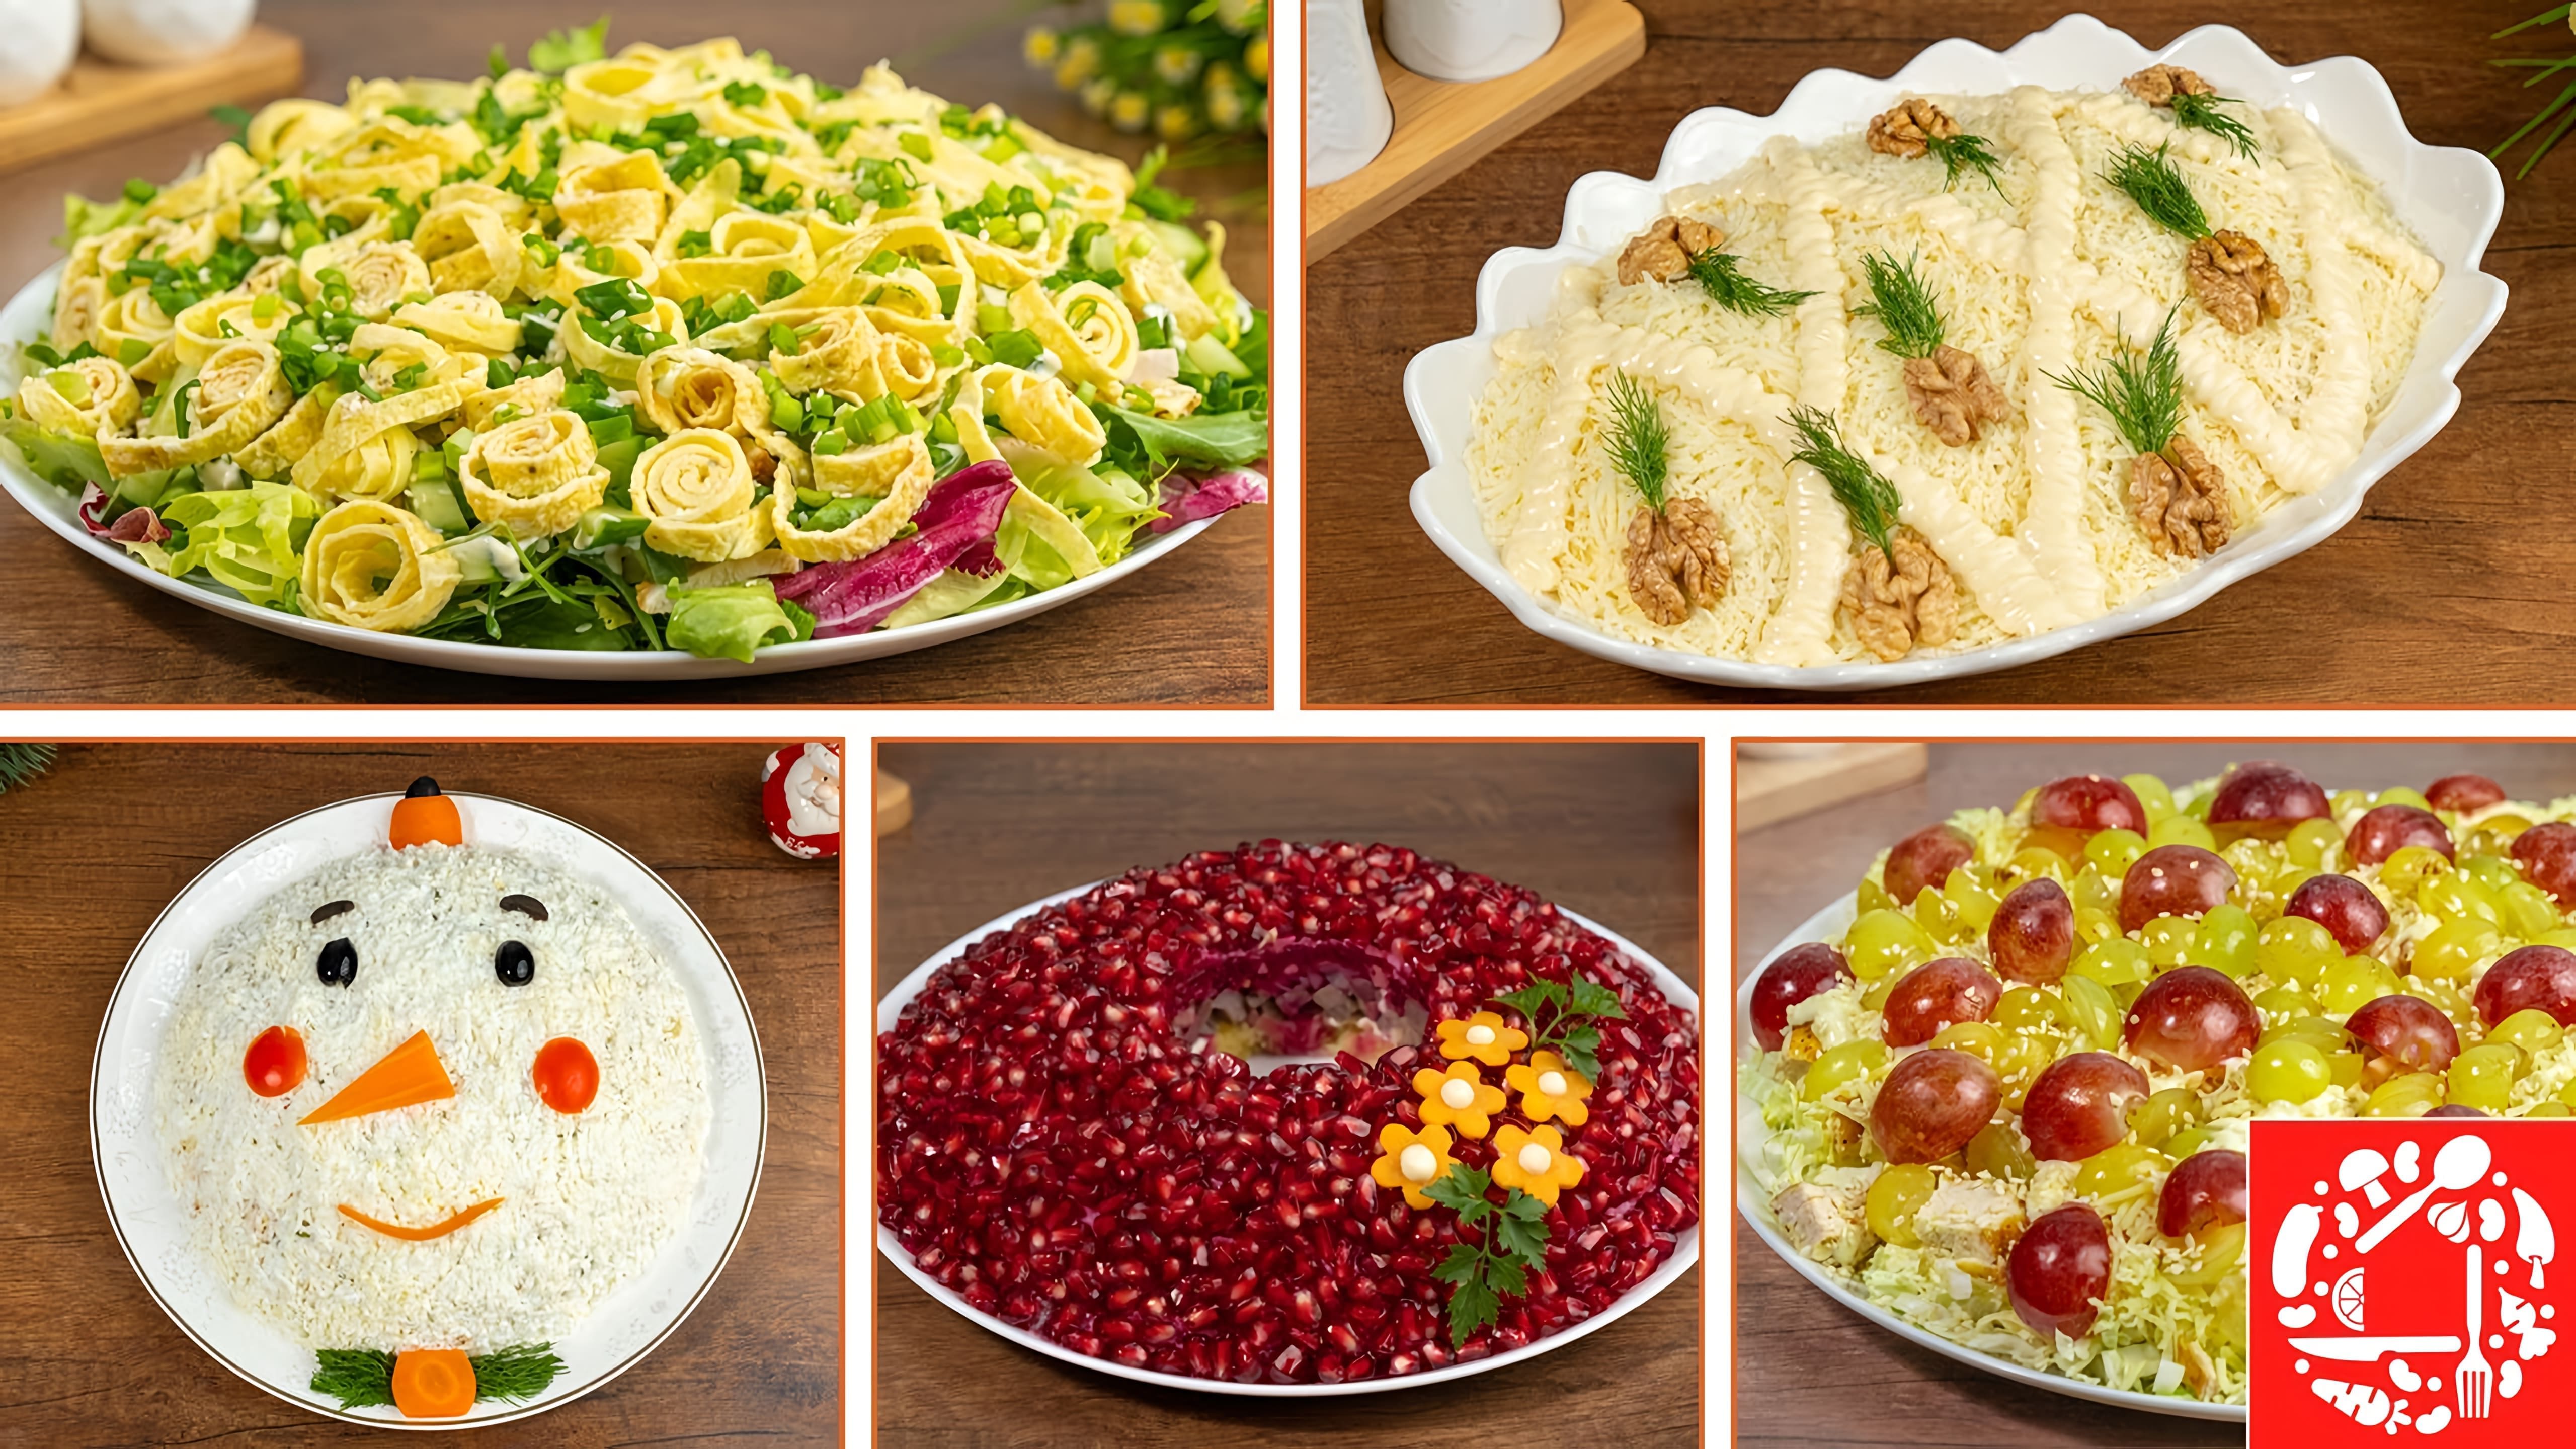 Рецепты 5 красивых салатов для сервировки на новогоднем столе - салат "Снеговик", салат "Ананас", салат "Магия", салат "Виноград", салат "Гранатовое браслет"